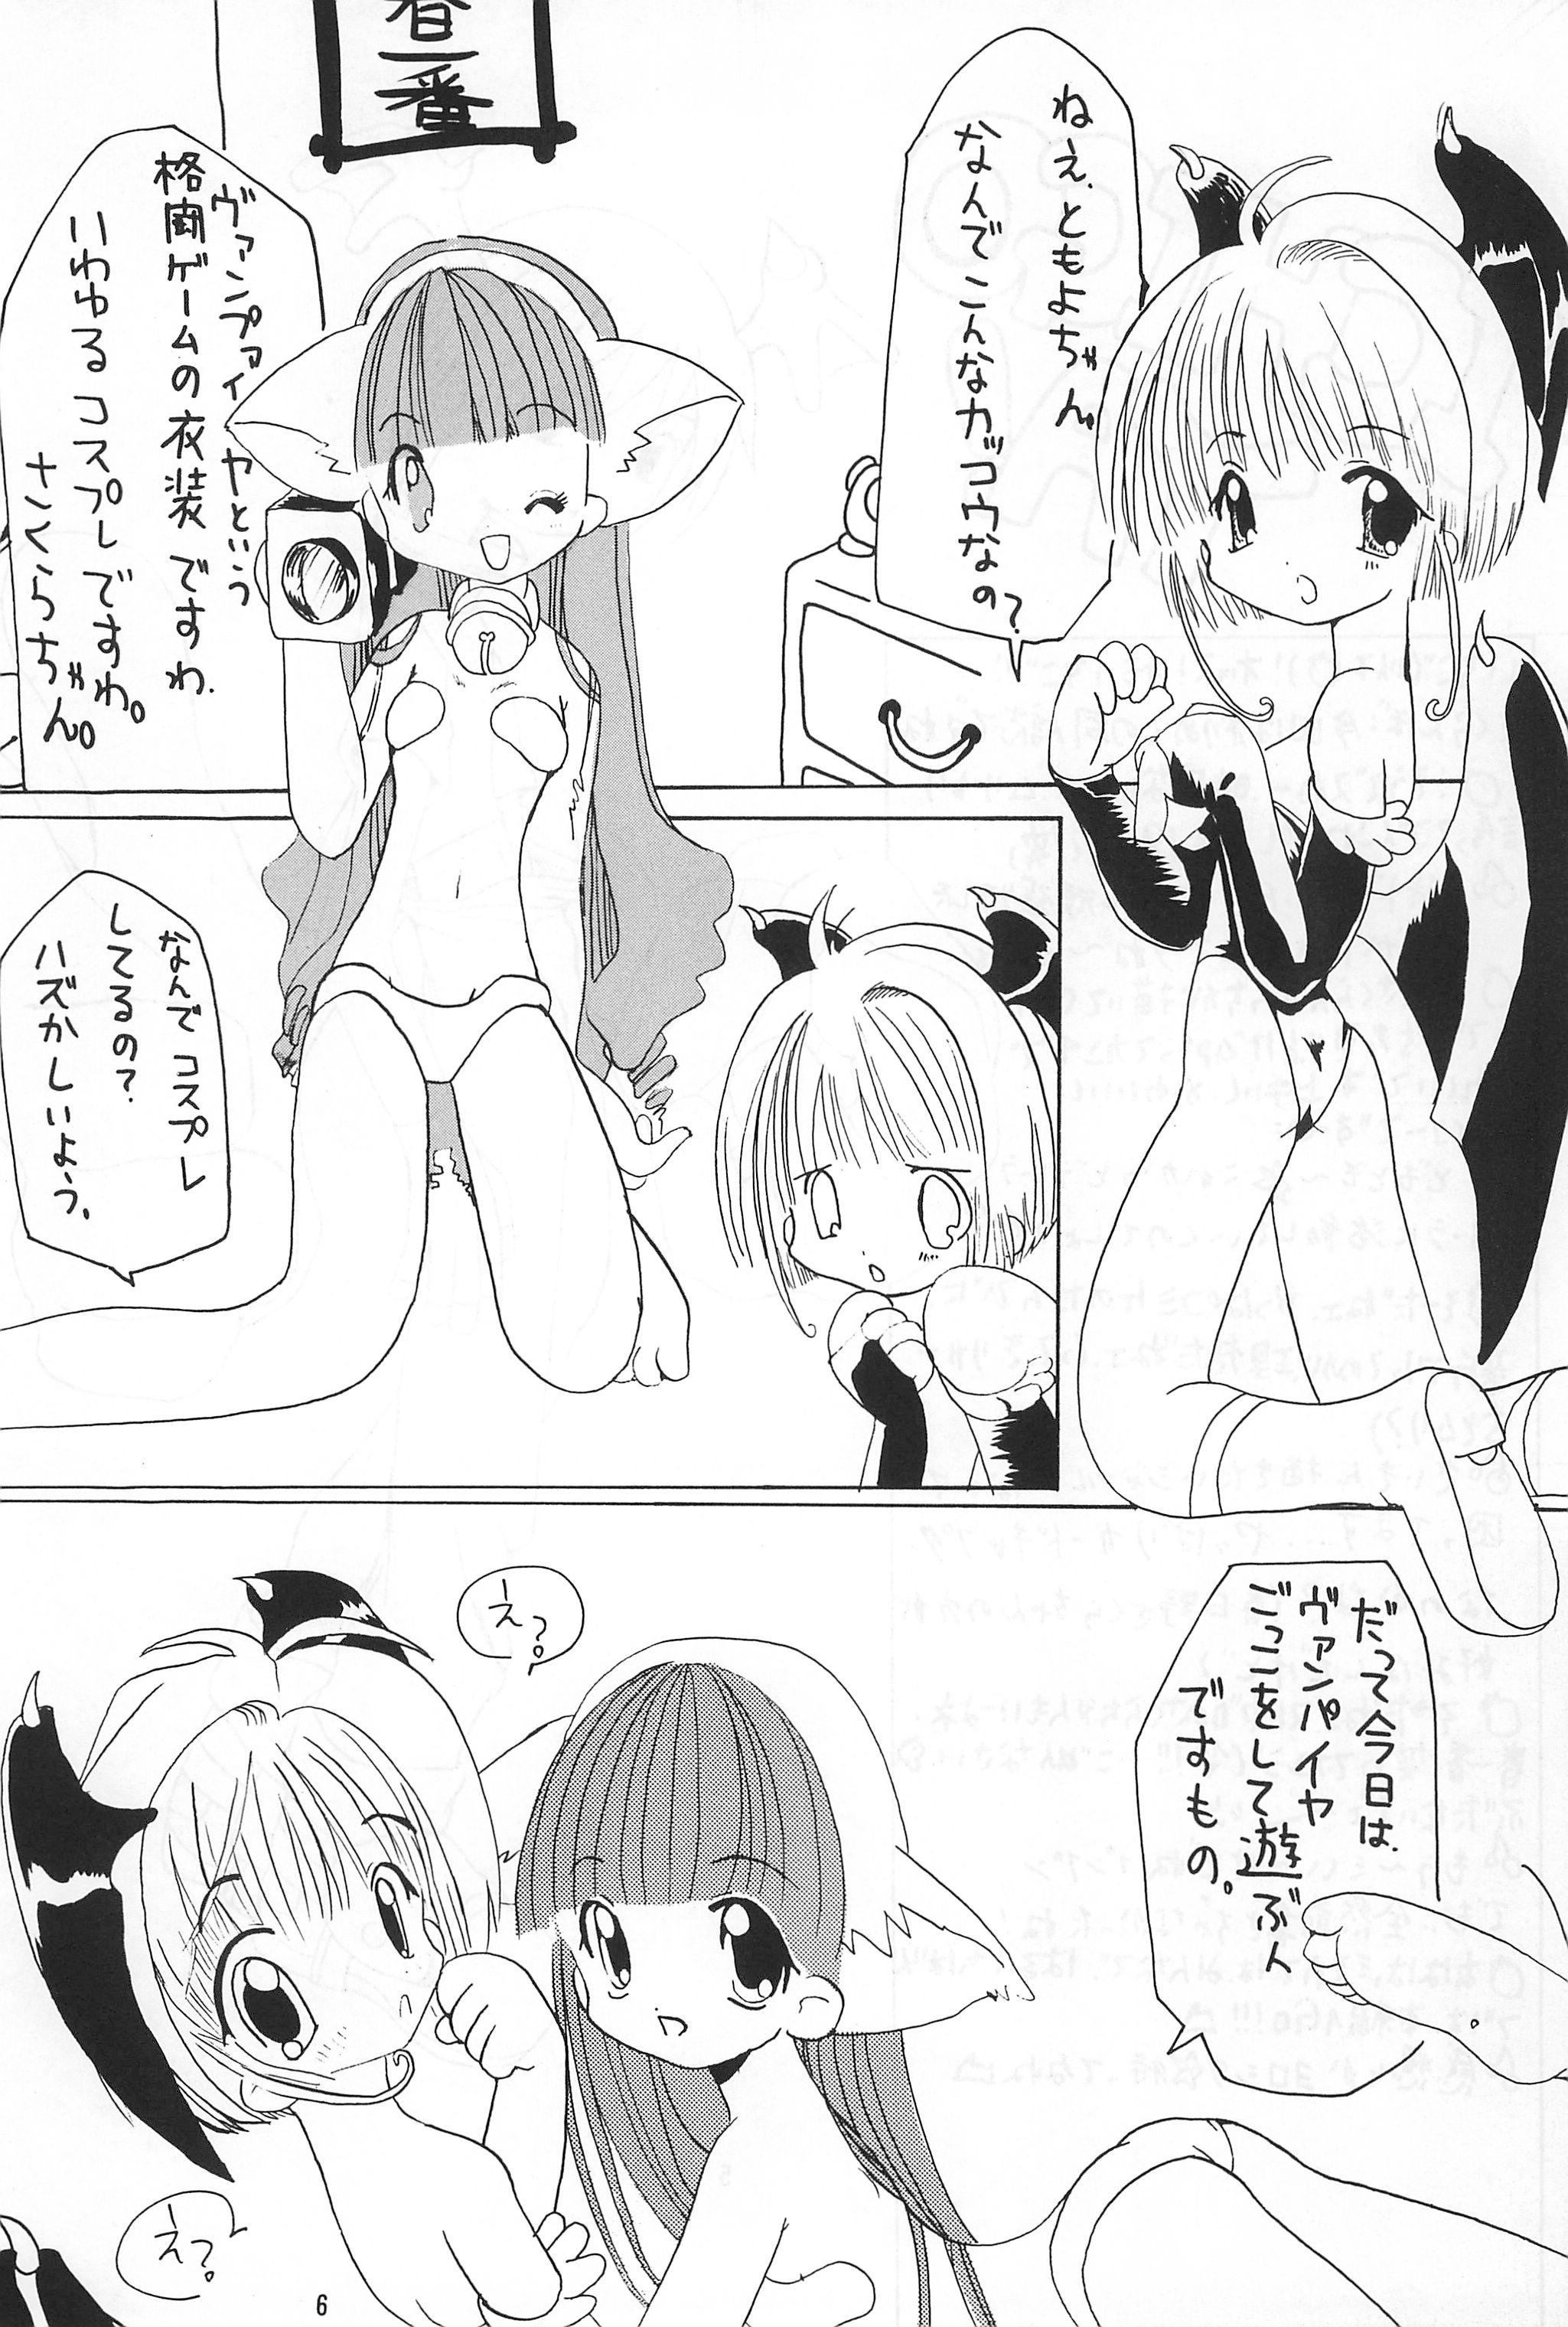 Sharing Sakura Book - Cardcaptor sakura POV - Page 6